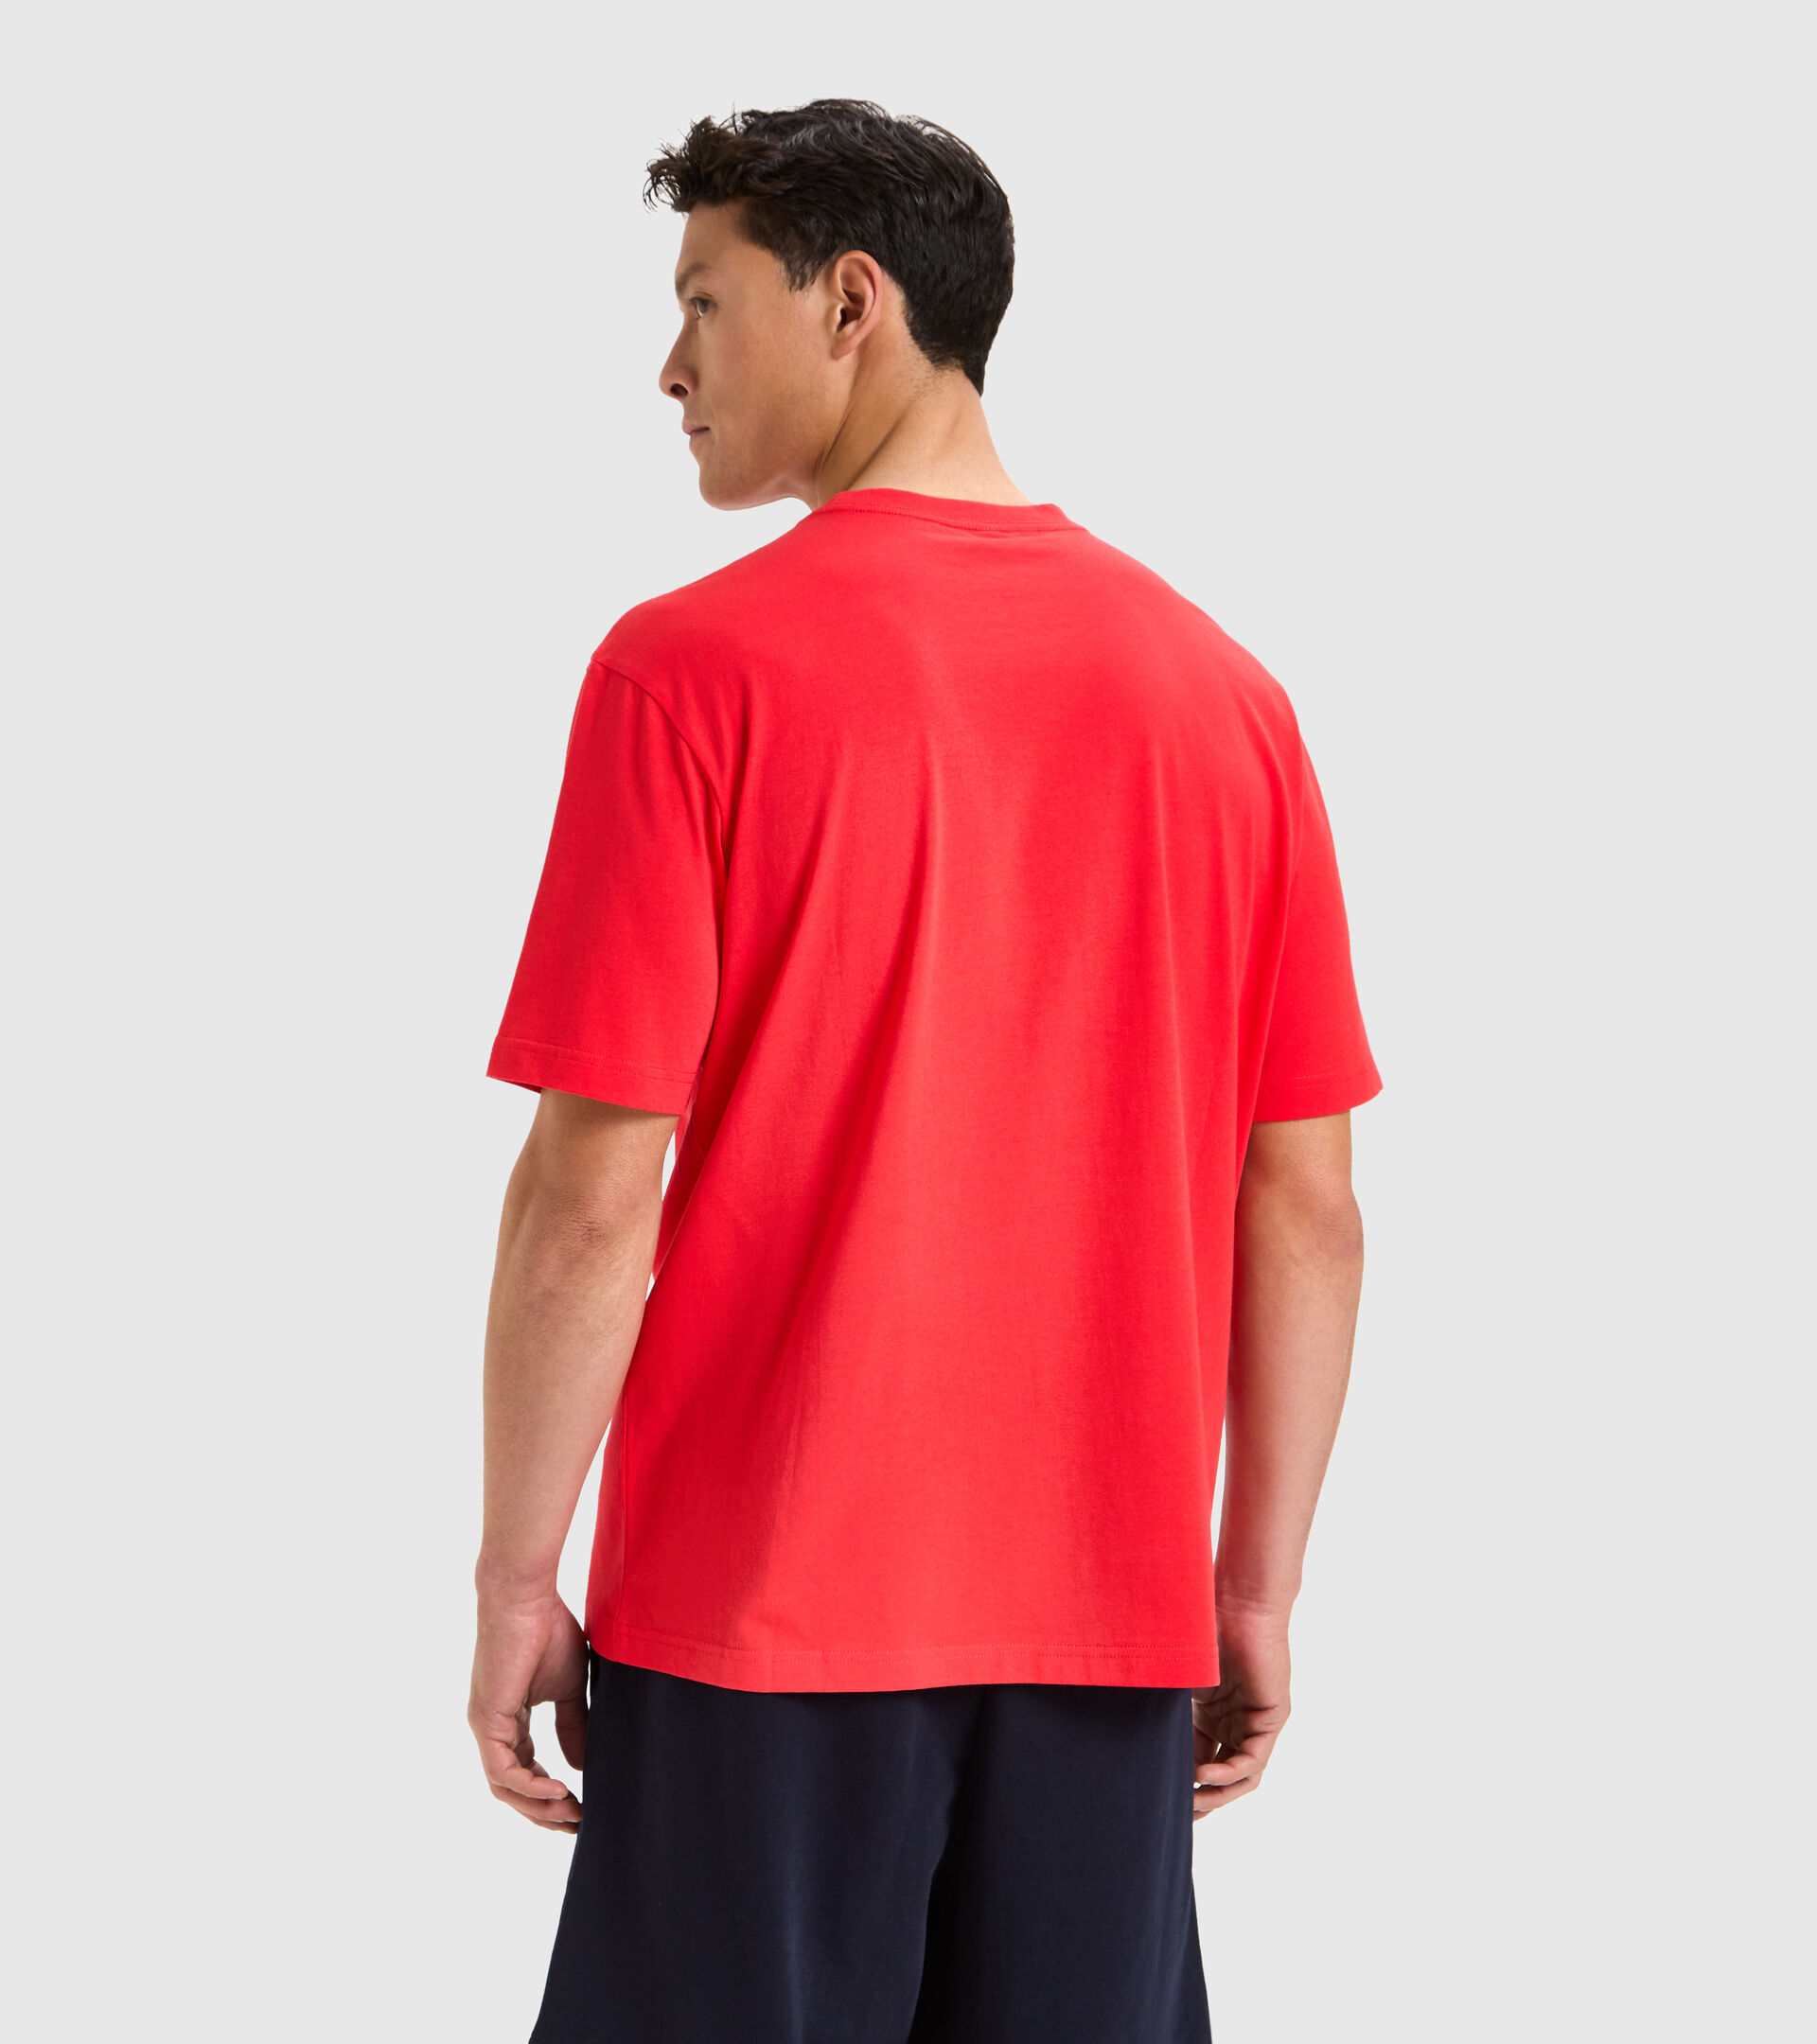 Cotton T-shirt - Men T-SHIRT SS FRAME POPPY RED - Diadora